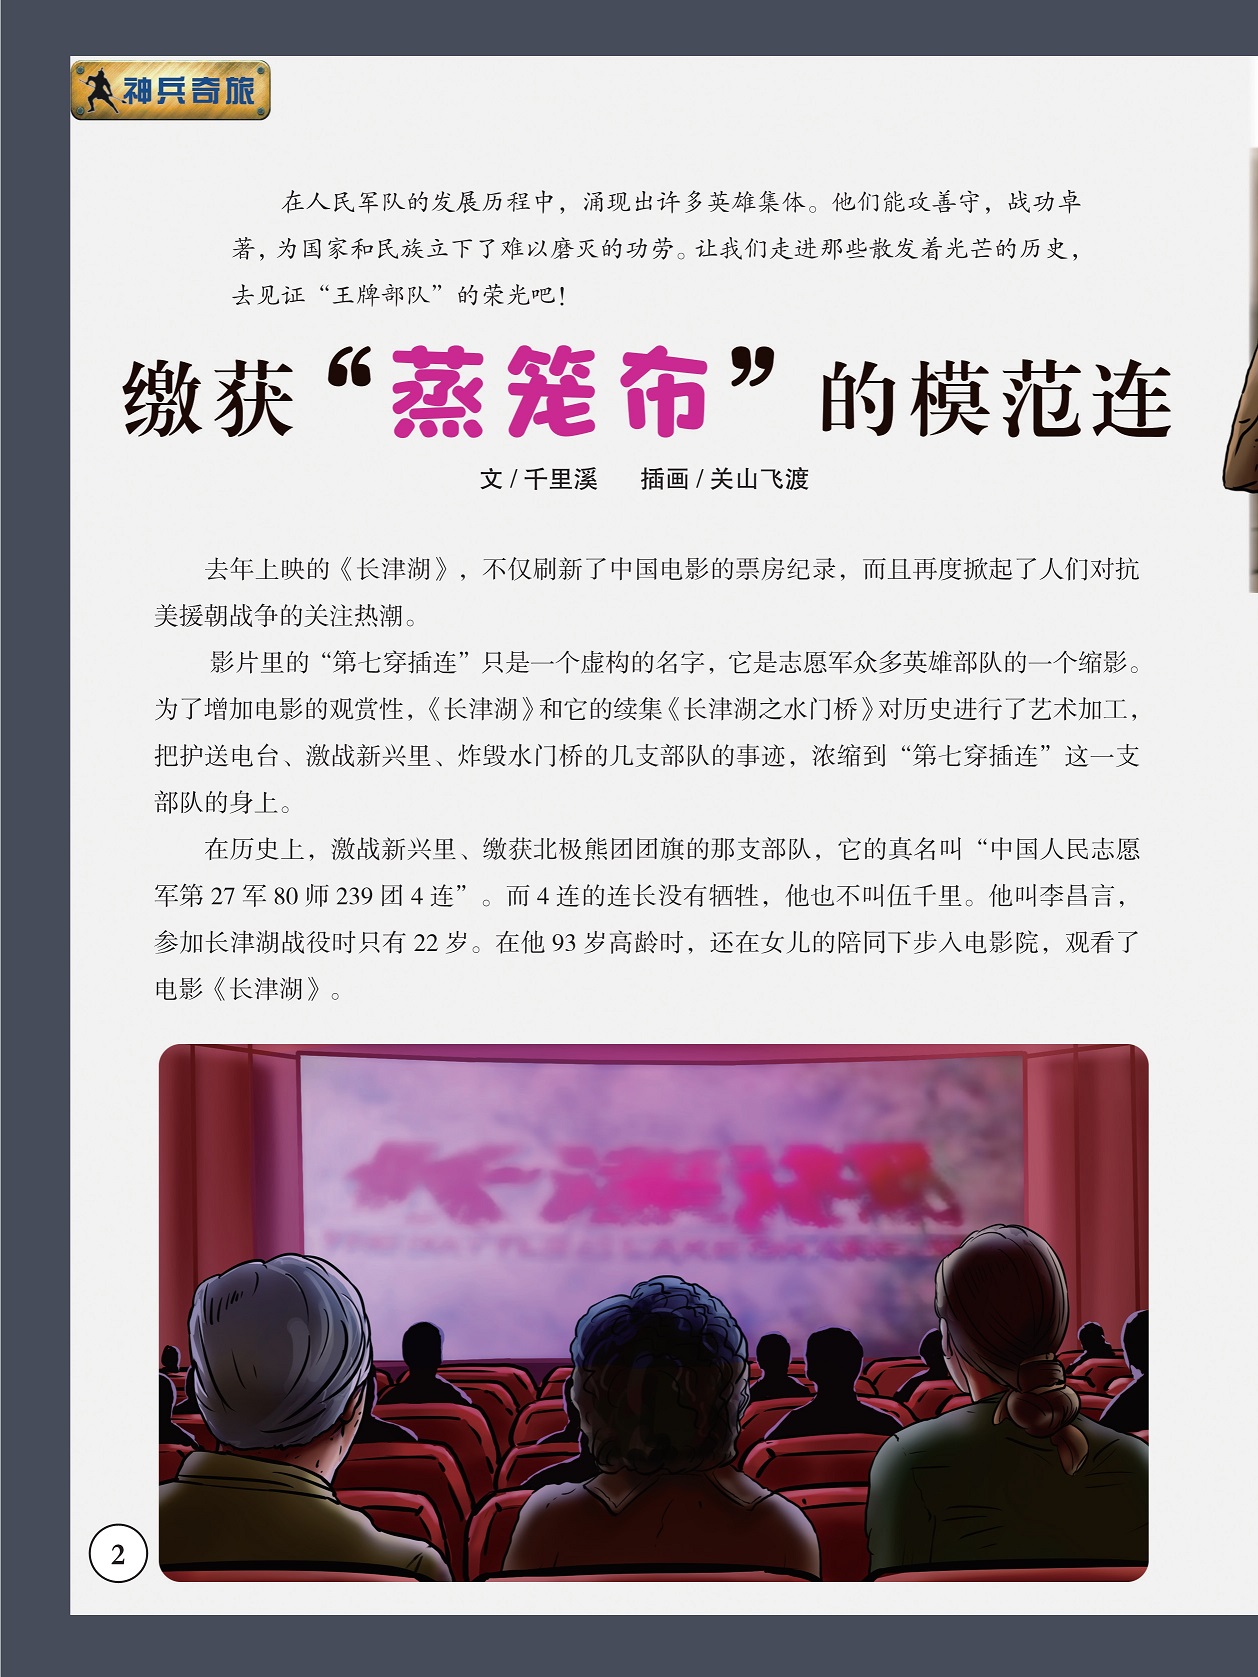 志愿军众多英雄部队的缩影,《长津湖》刷新了中国电影的票房纪录